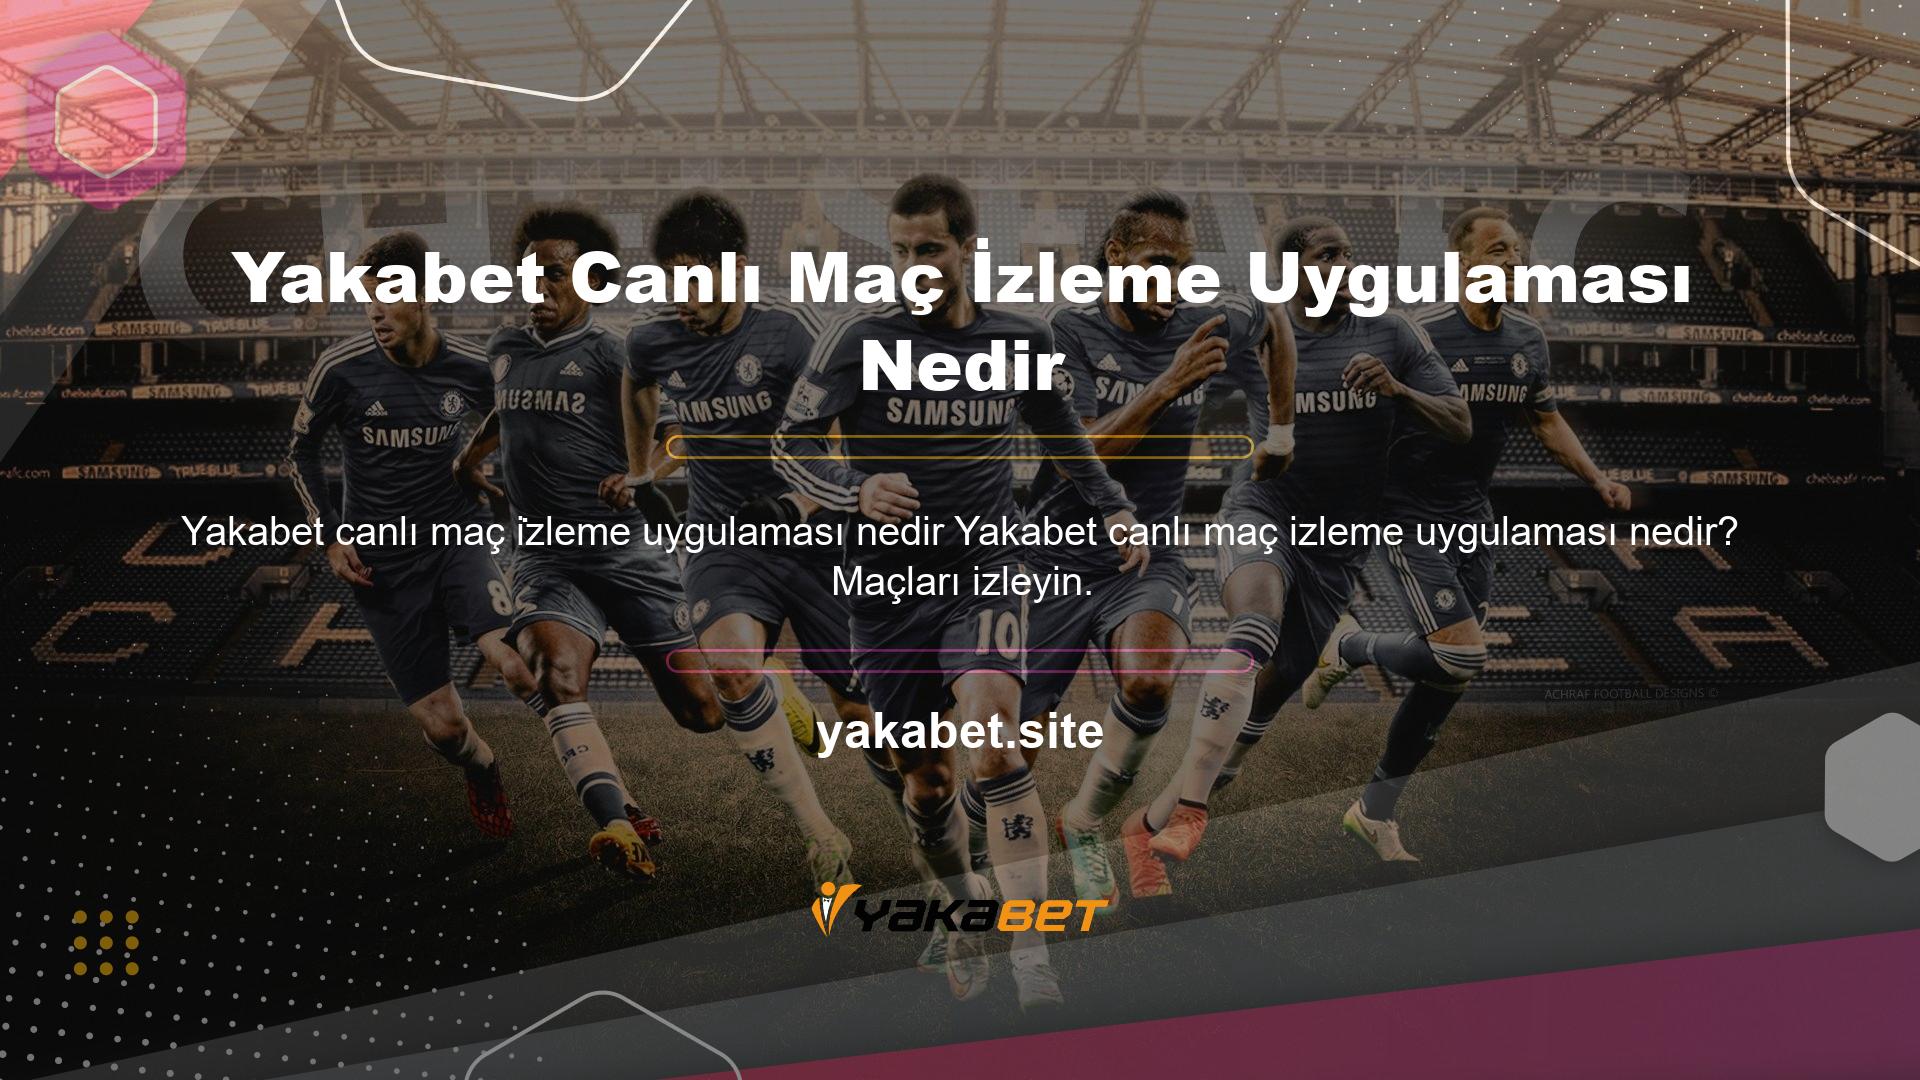 Üyeler Yakabet online bahis sitesinde canlı maçları izleyebilirler! Türkiye ile Avrupa arasındaki maçların çoğu canlı olarak yayınlanmaktadır